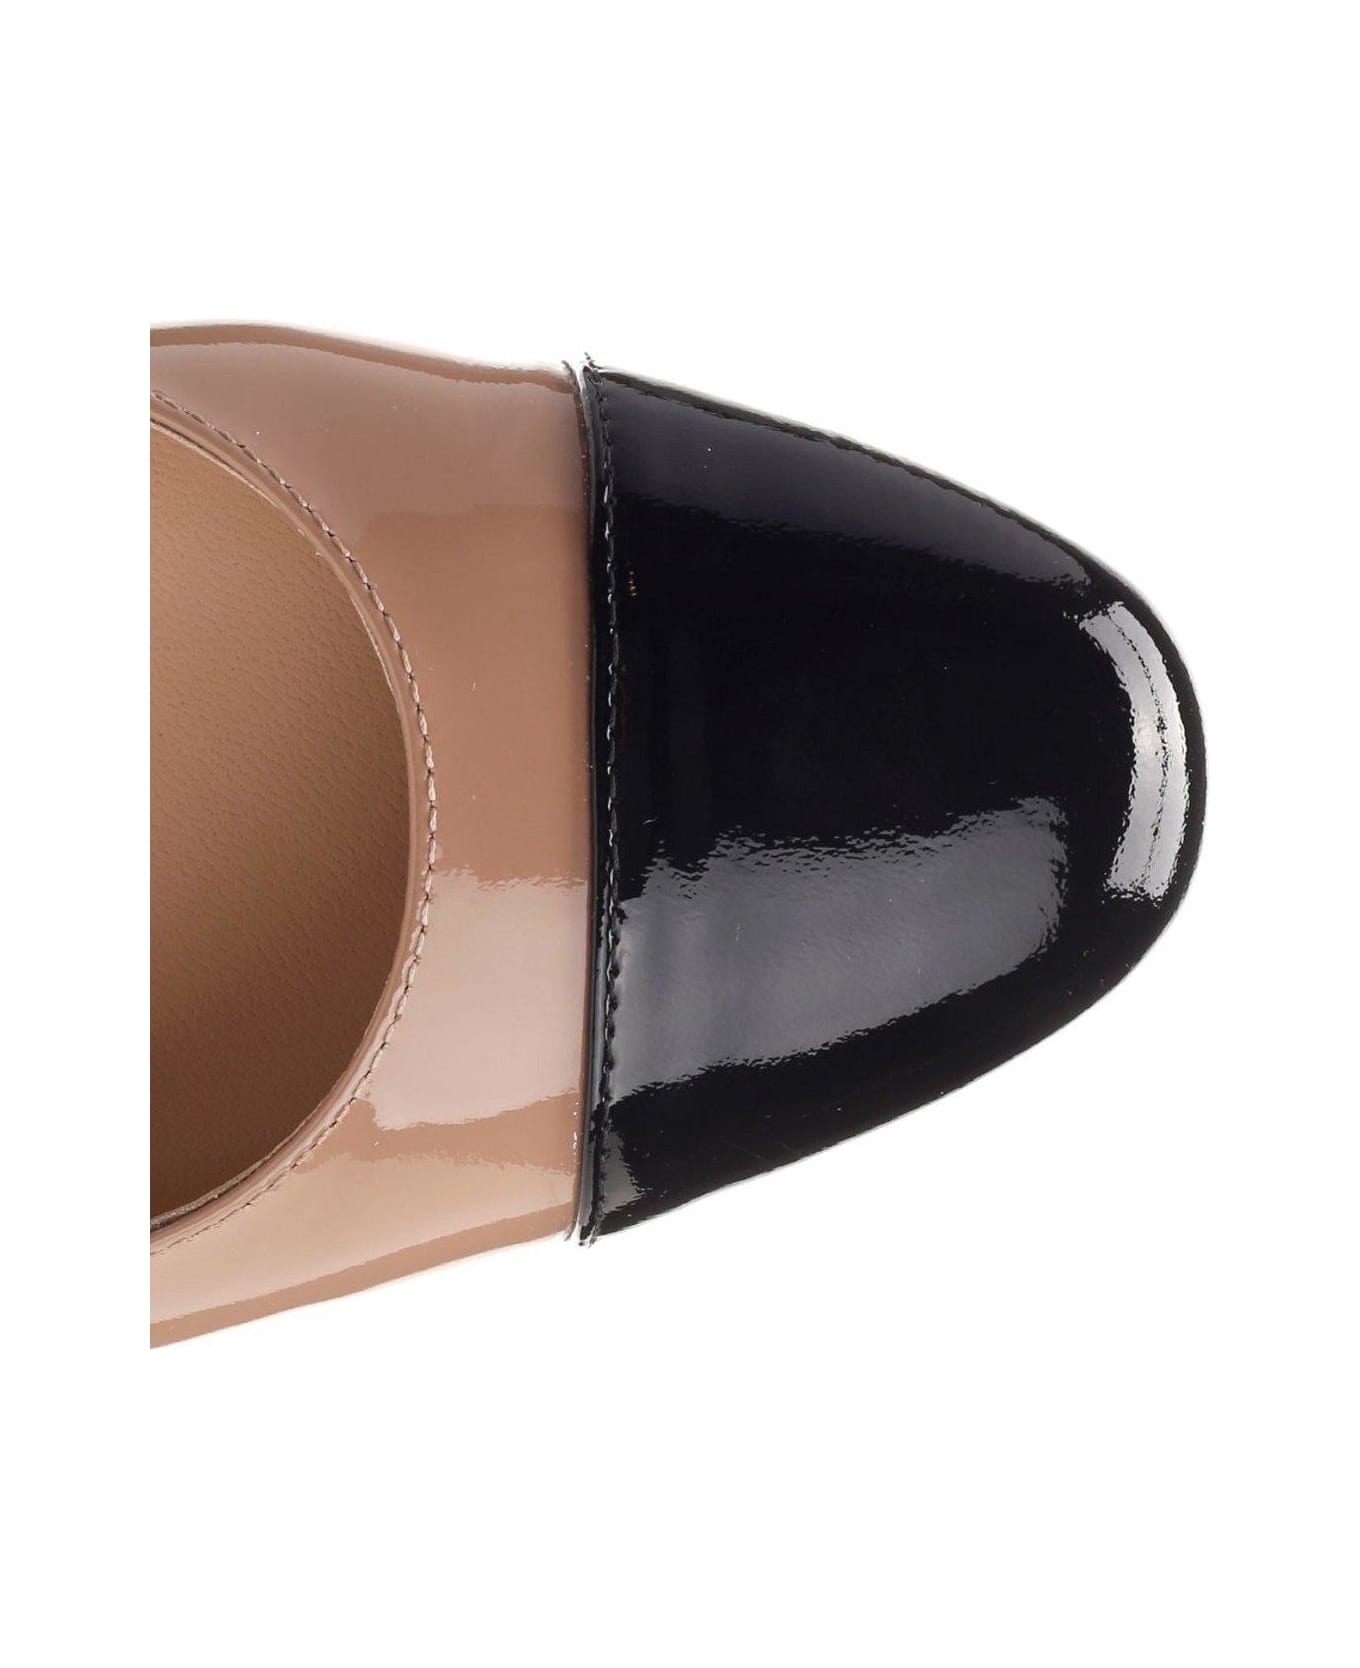 Stuart Weitzman Sleek Slingback Flat Shoes - Fawn/black